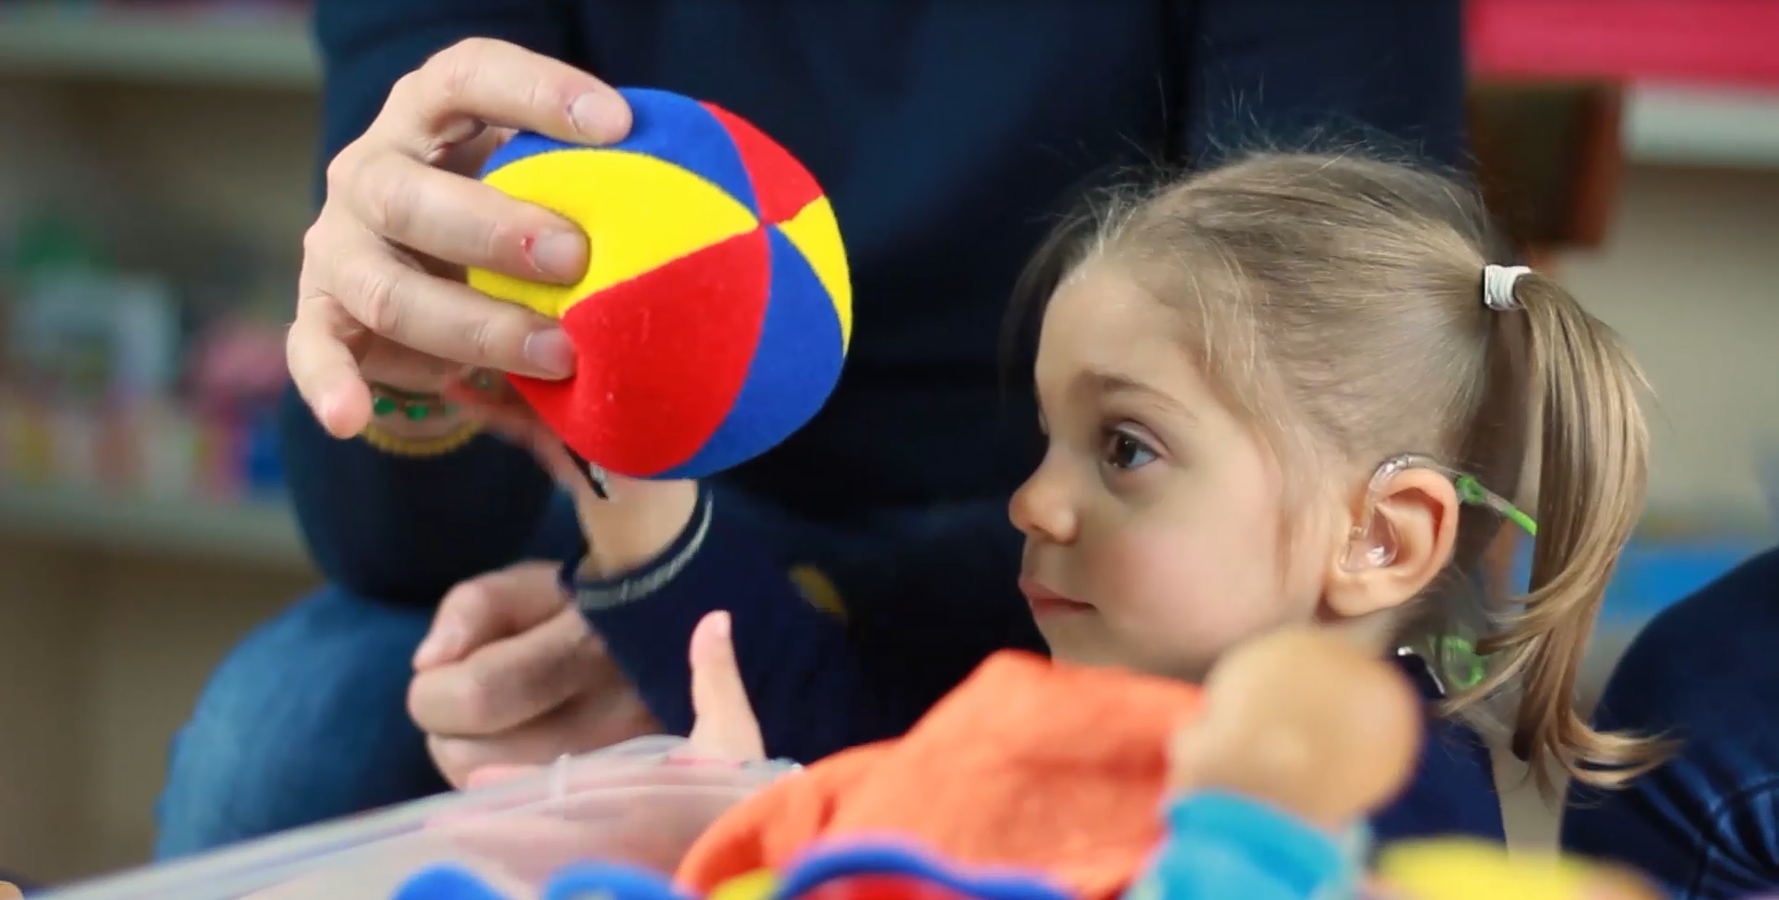 La piccola Sveva, bambina con sindrome di Charge, prende una pallina di stoffa colorata dalle mani del papà